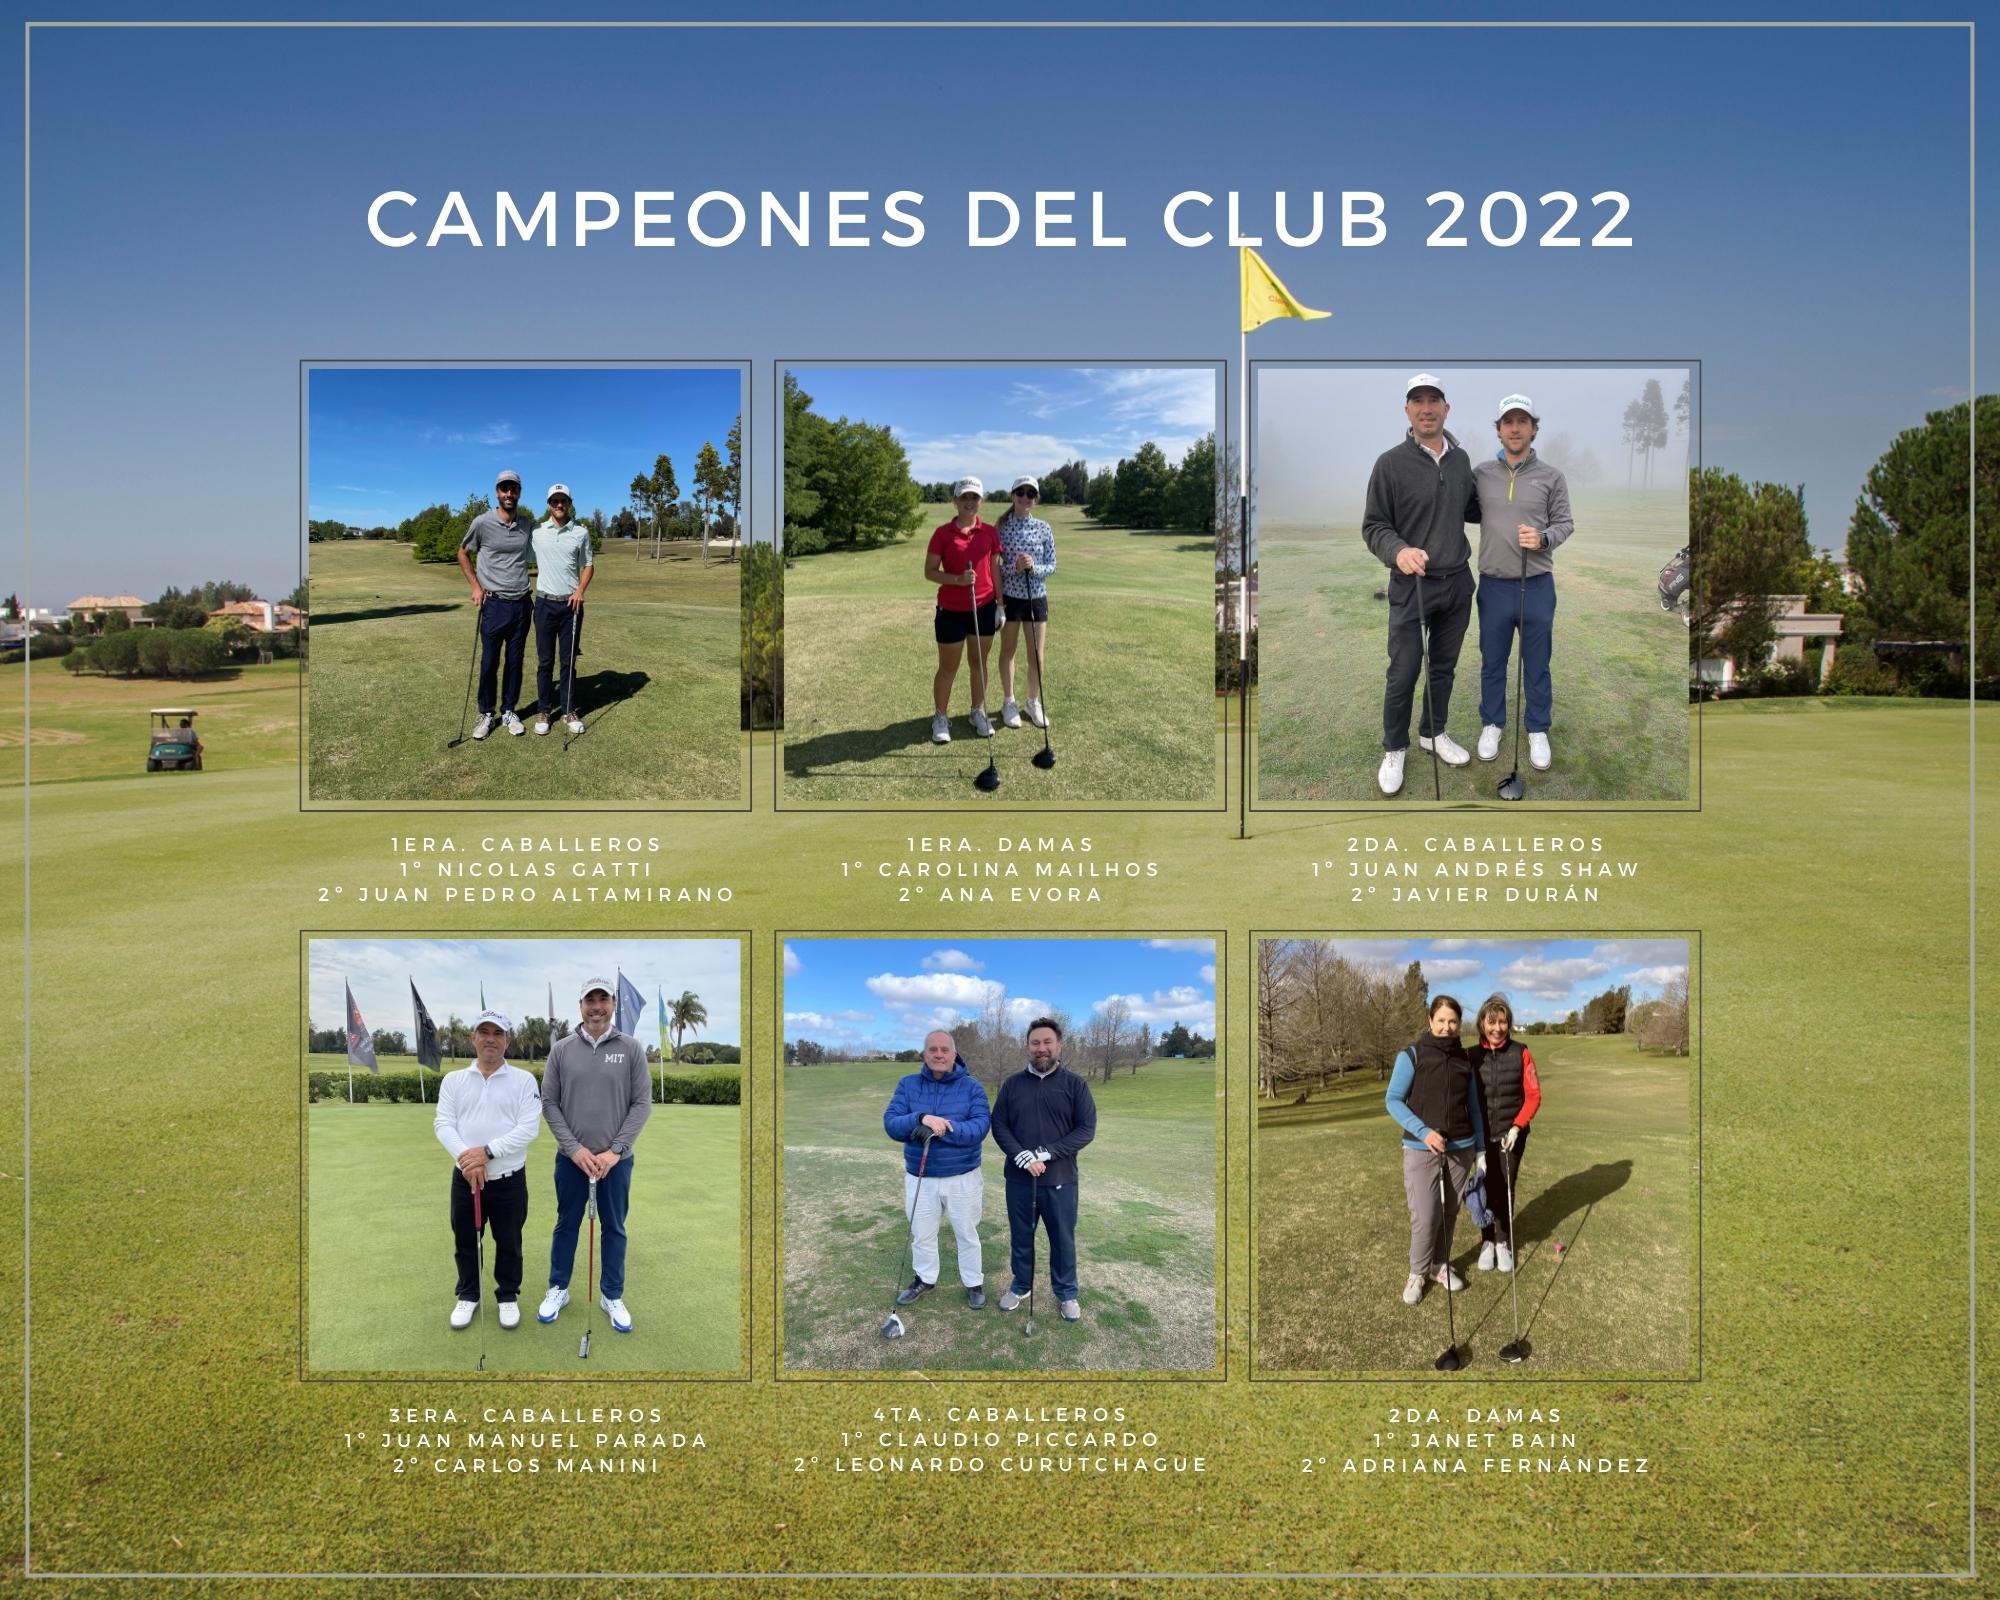 Campeones del Club 2022